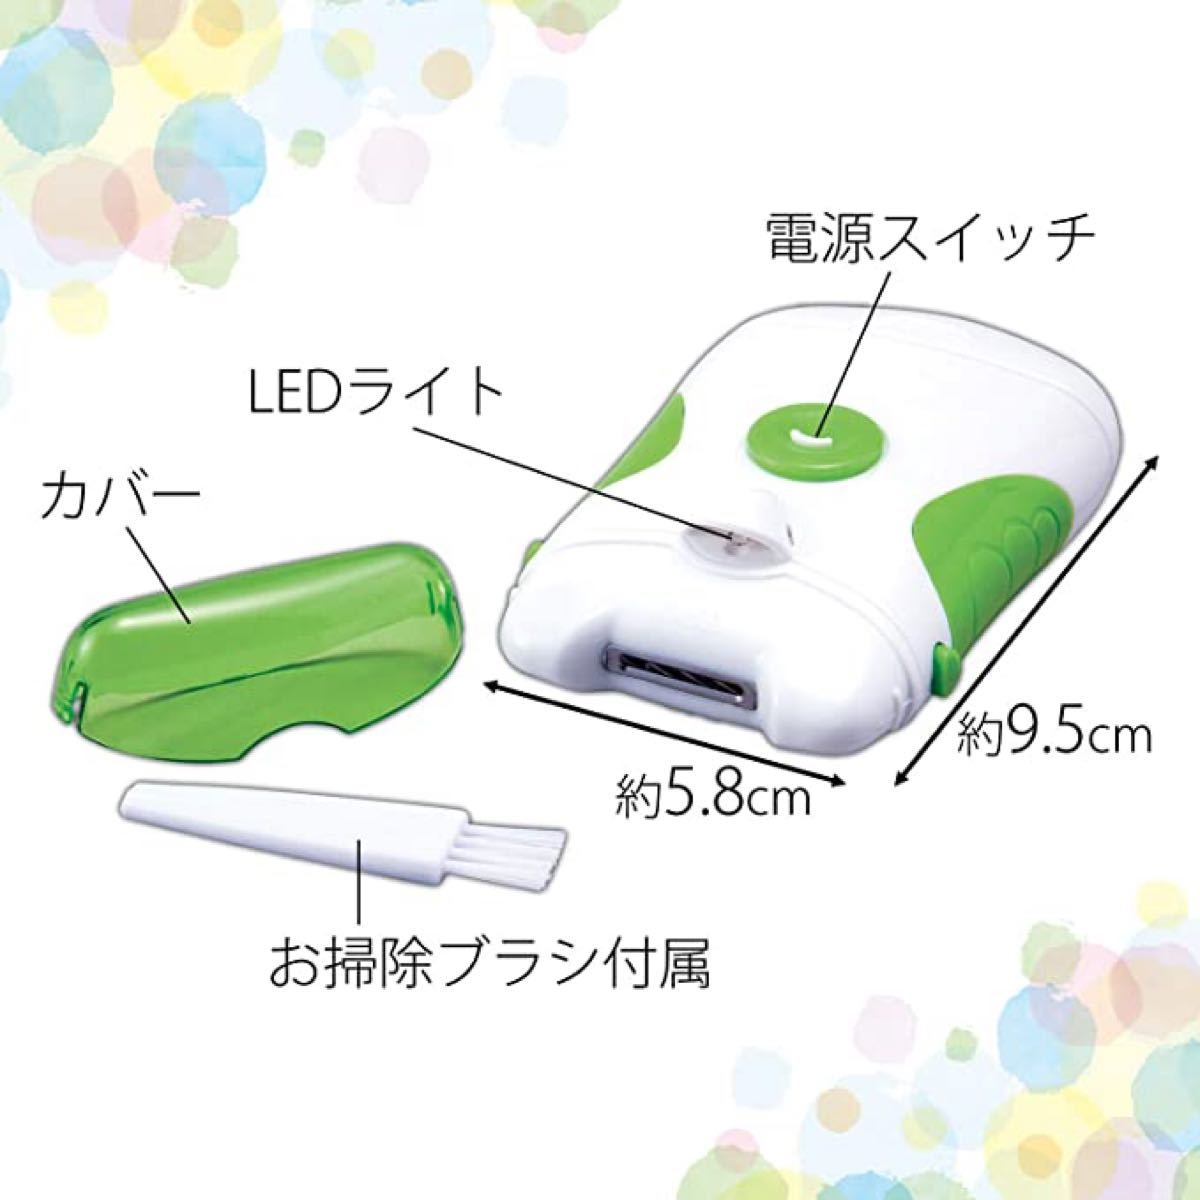 電動爪やすり(ライト付) つめやすり 電池式 コードレス 足の爪 老眼 ネイルケア 水洗い可  電動爪切り